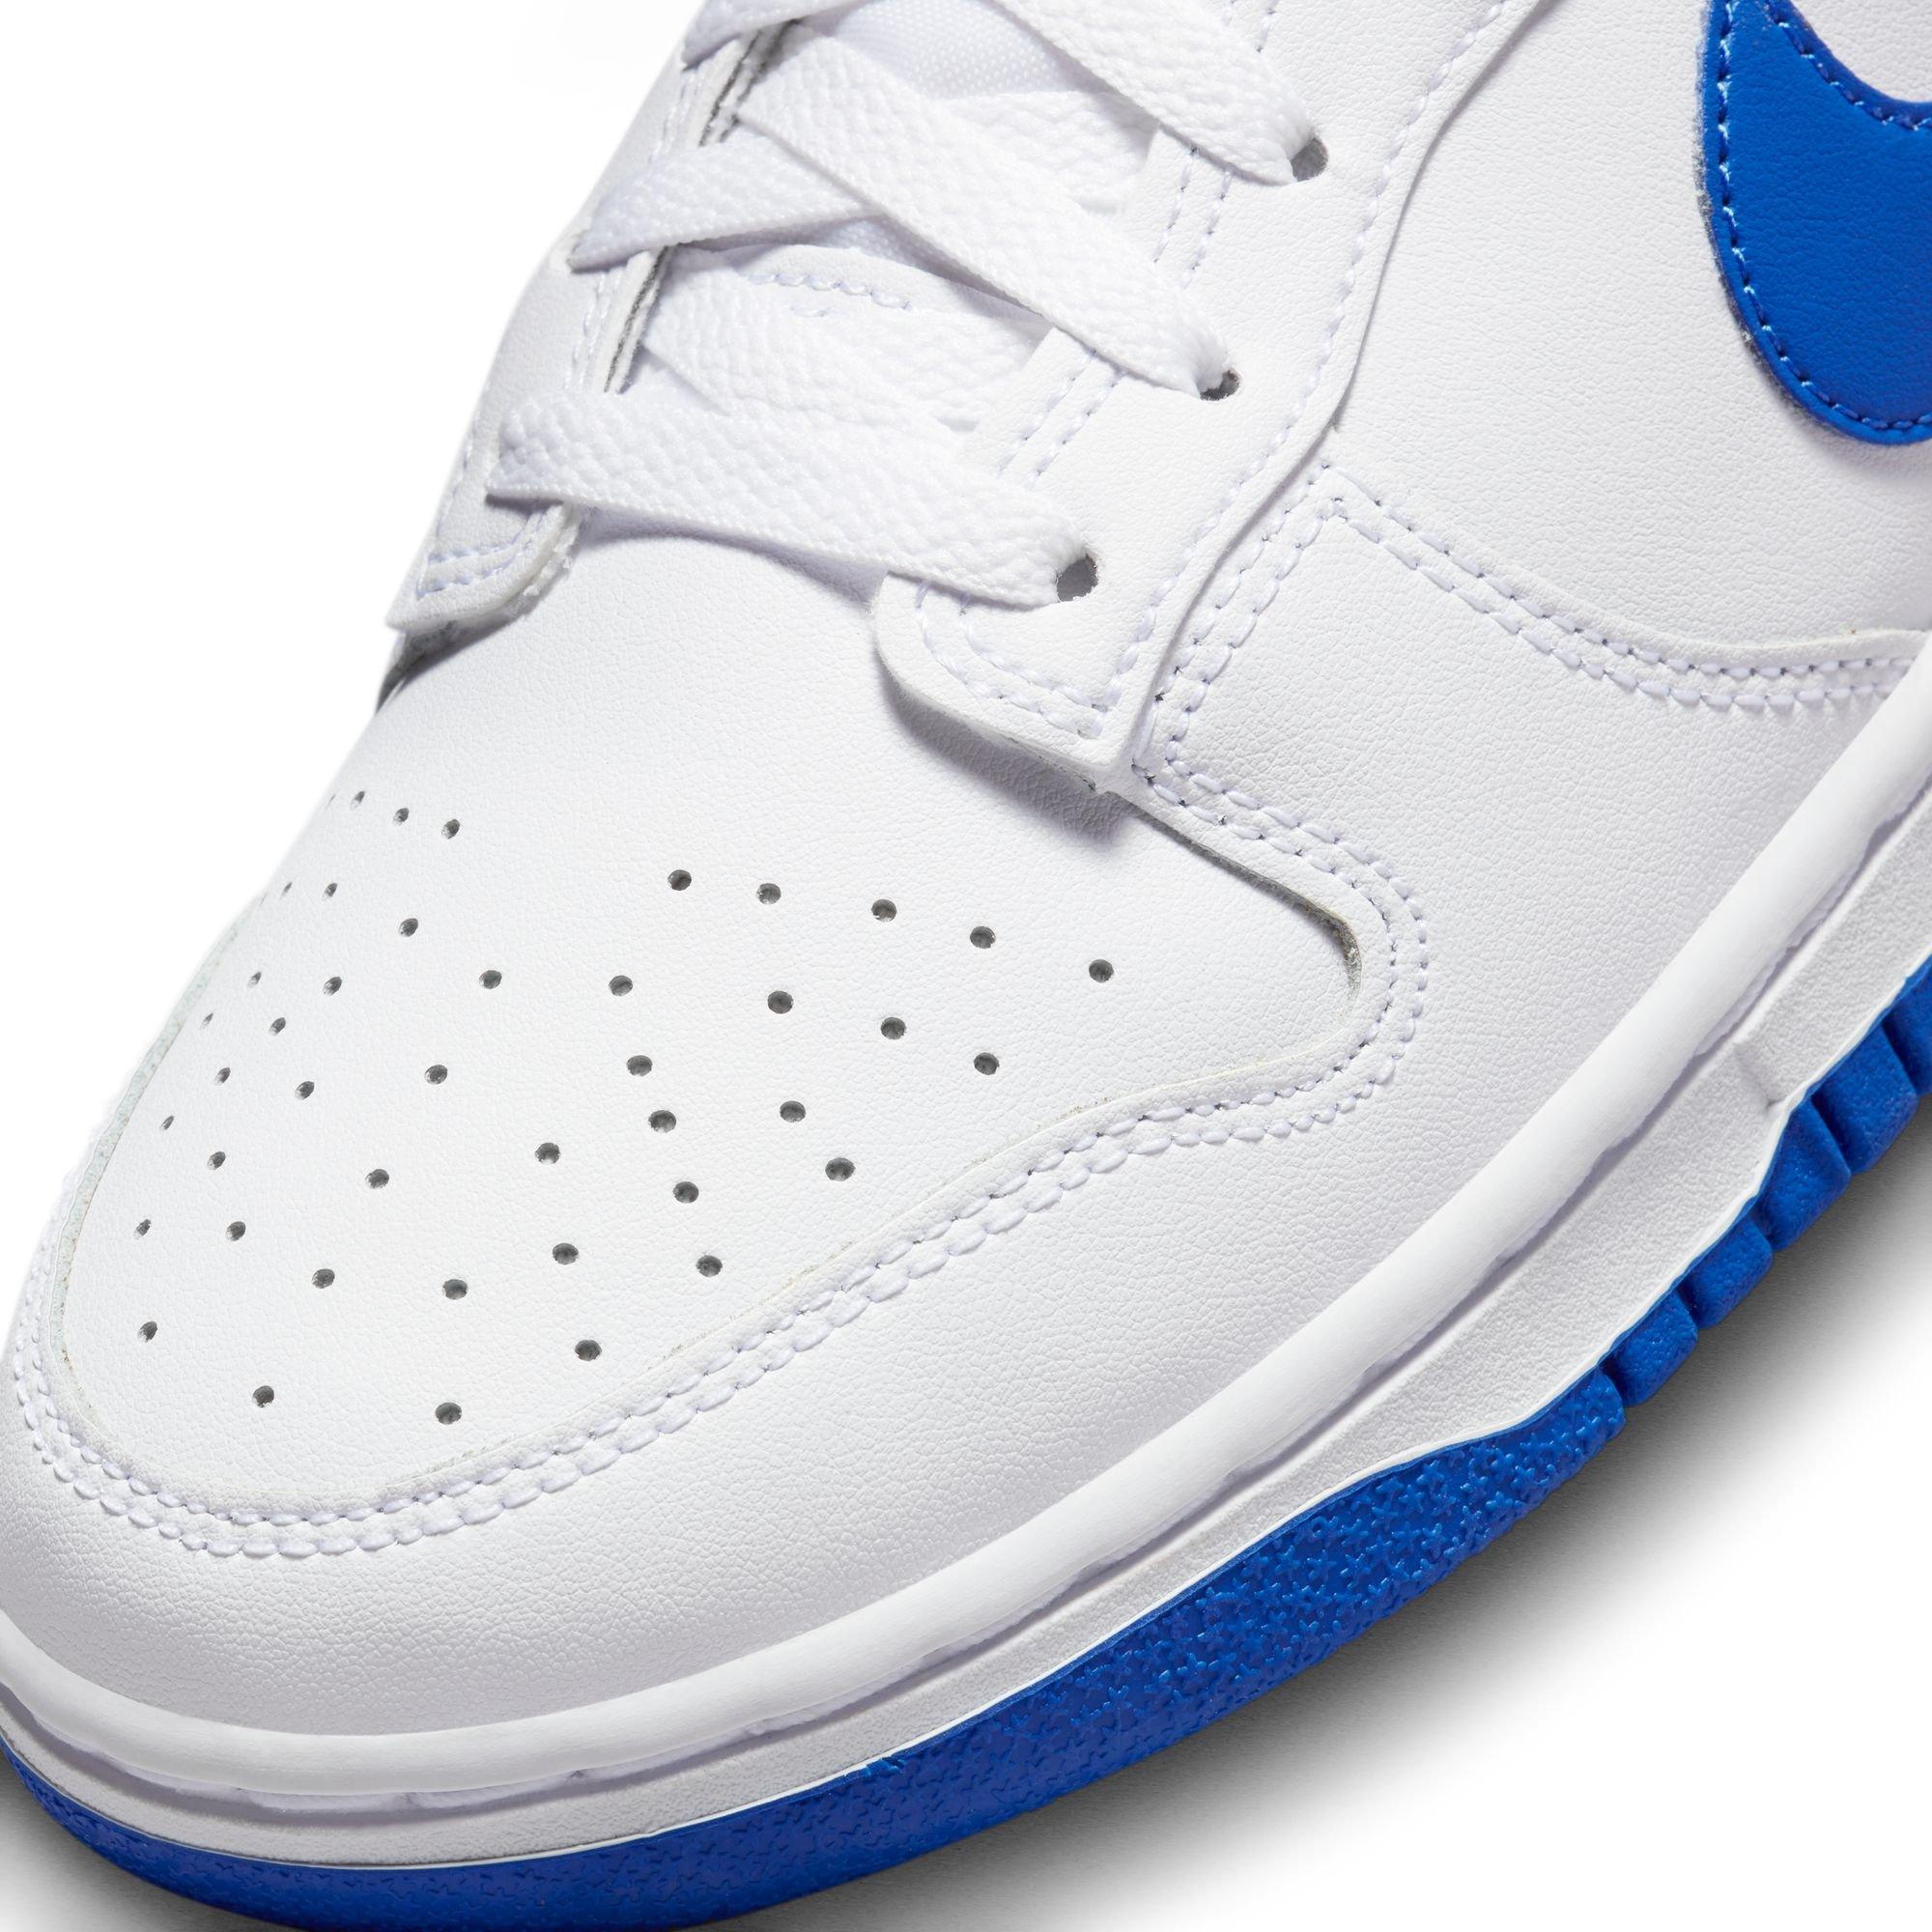 Nike Dunk Low Retro White/Black Men's Shoe - Hibbett